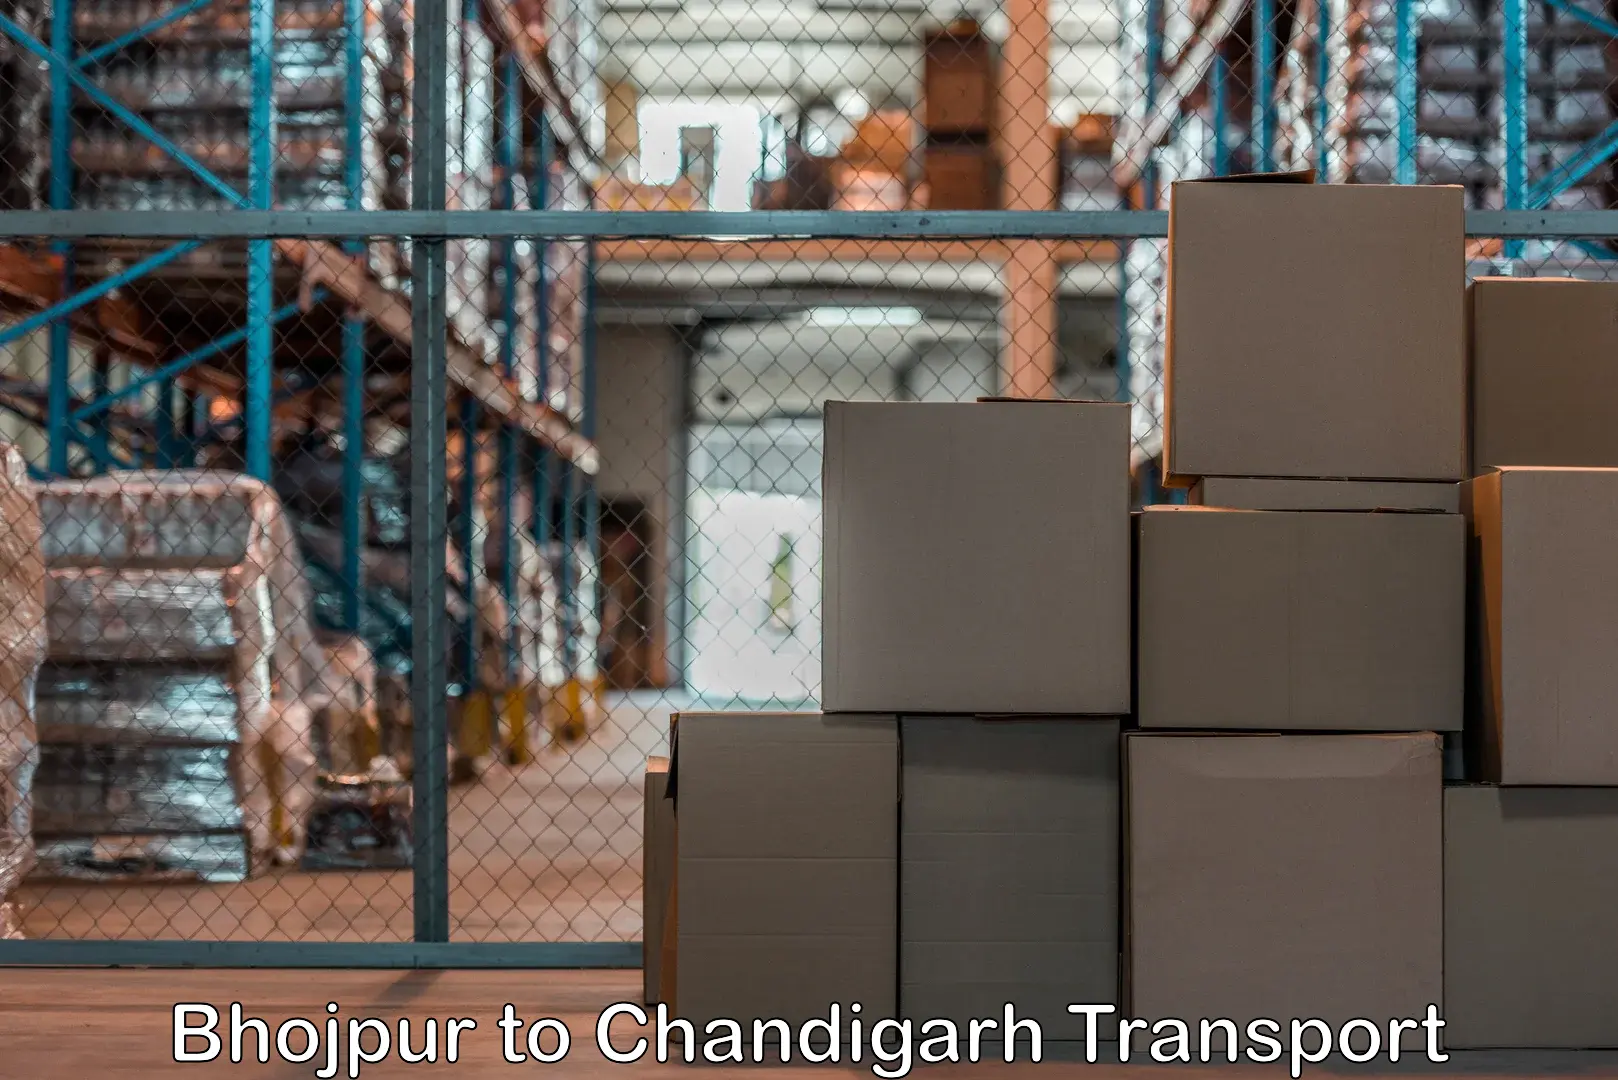 International cargo transportation services Bhojpur to Chandigarh